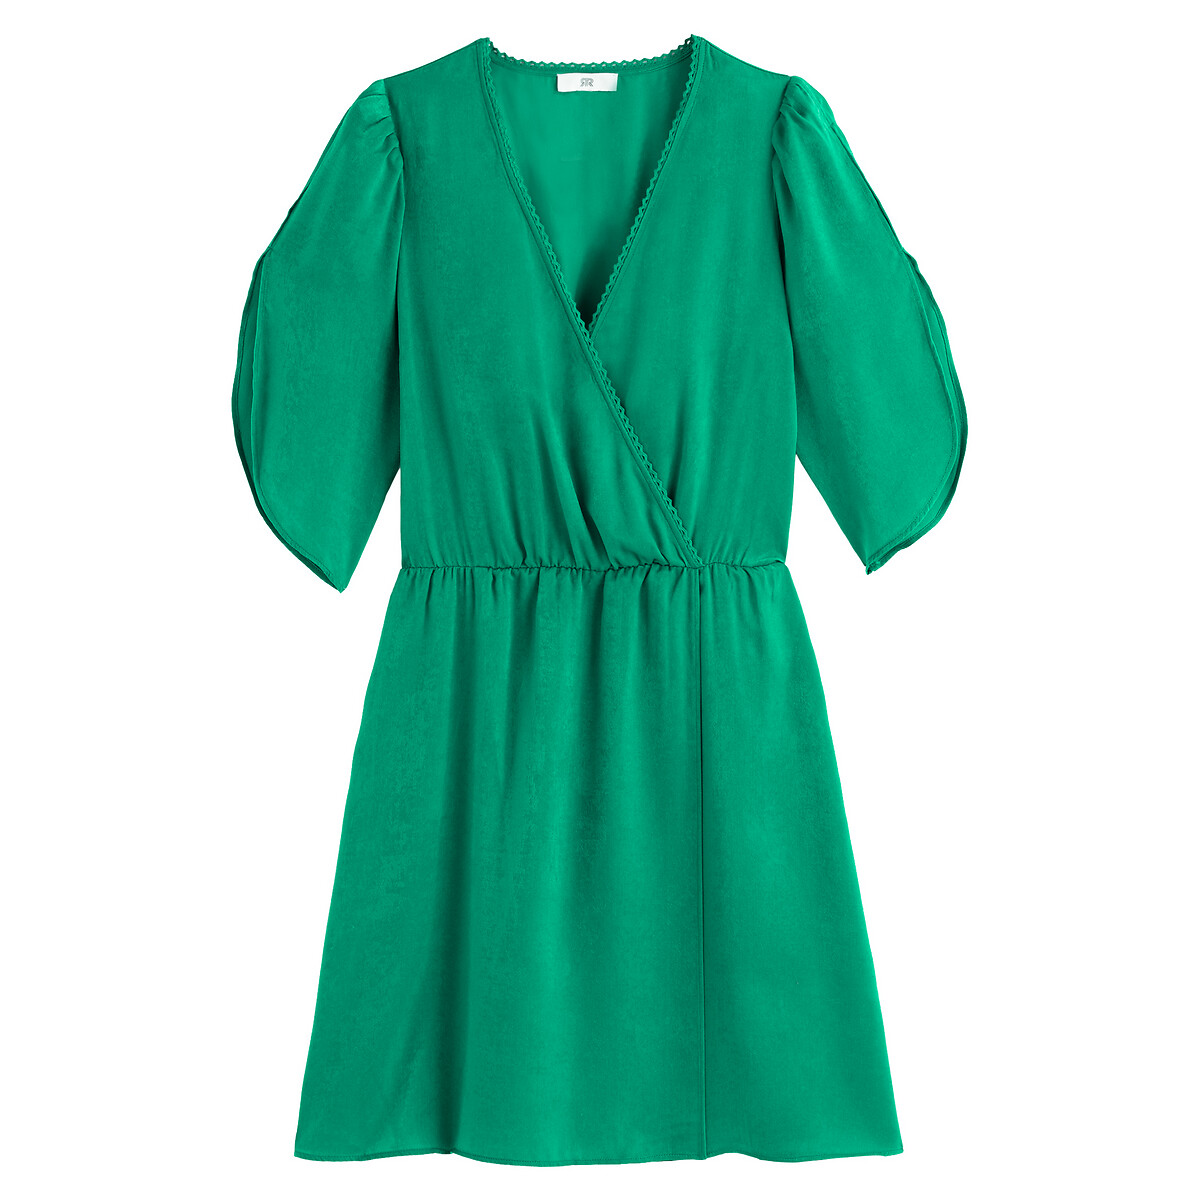 Платье LaRedoute Короткое с запахом короткие рукава 48 (FR) - 54 (RUS) зеленый, размер 48 (FR) - 54 (RUS) Короткое с запахом короткие рукава 48 (FR) - 54 (RUS) зеленый - фото 5